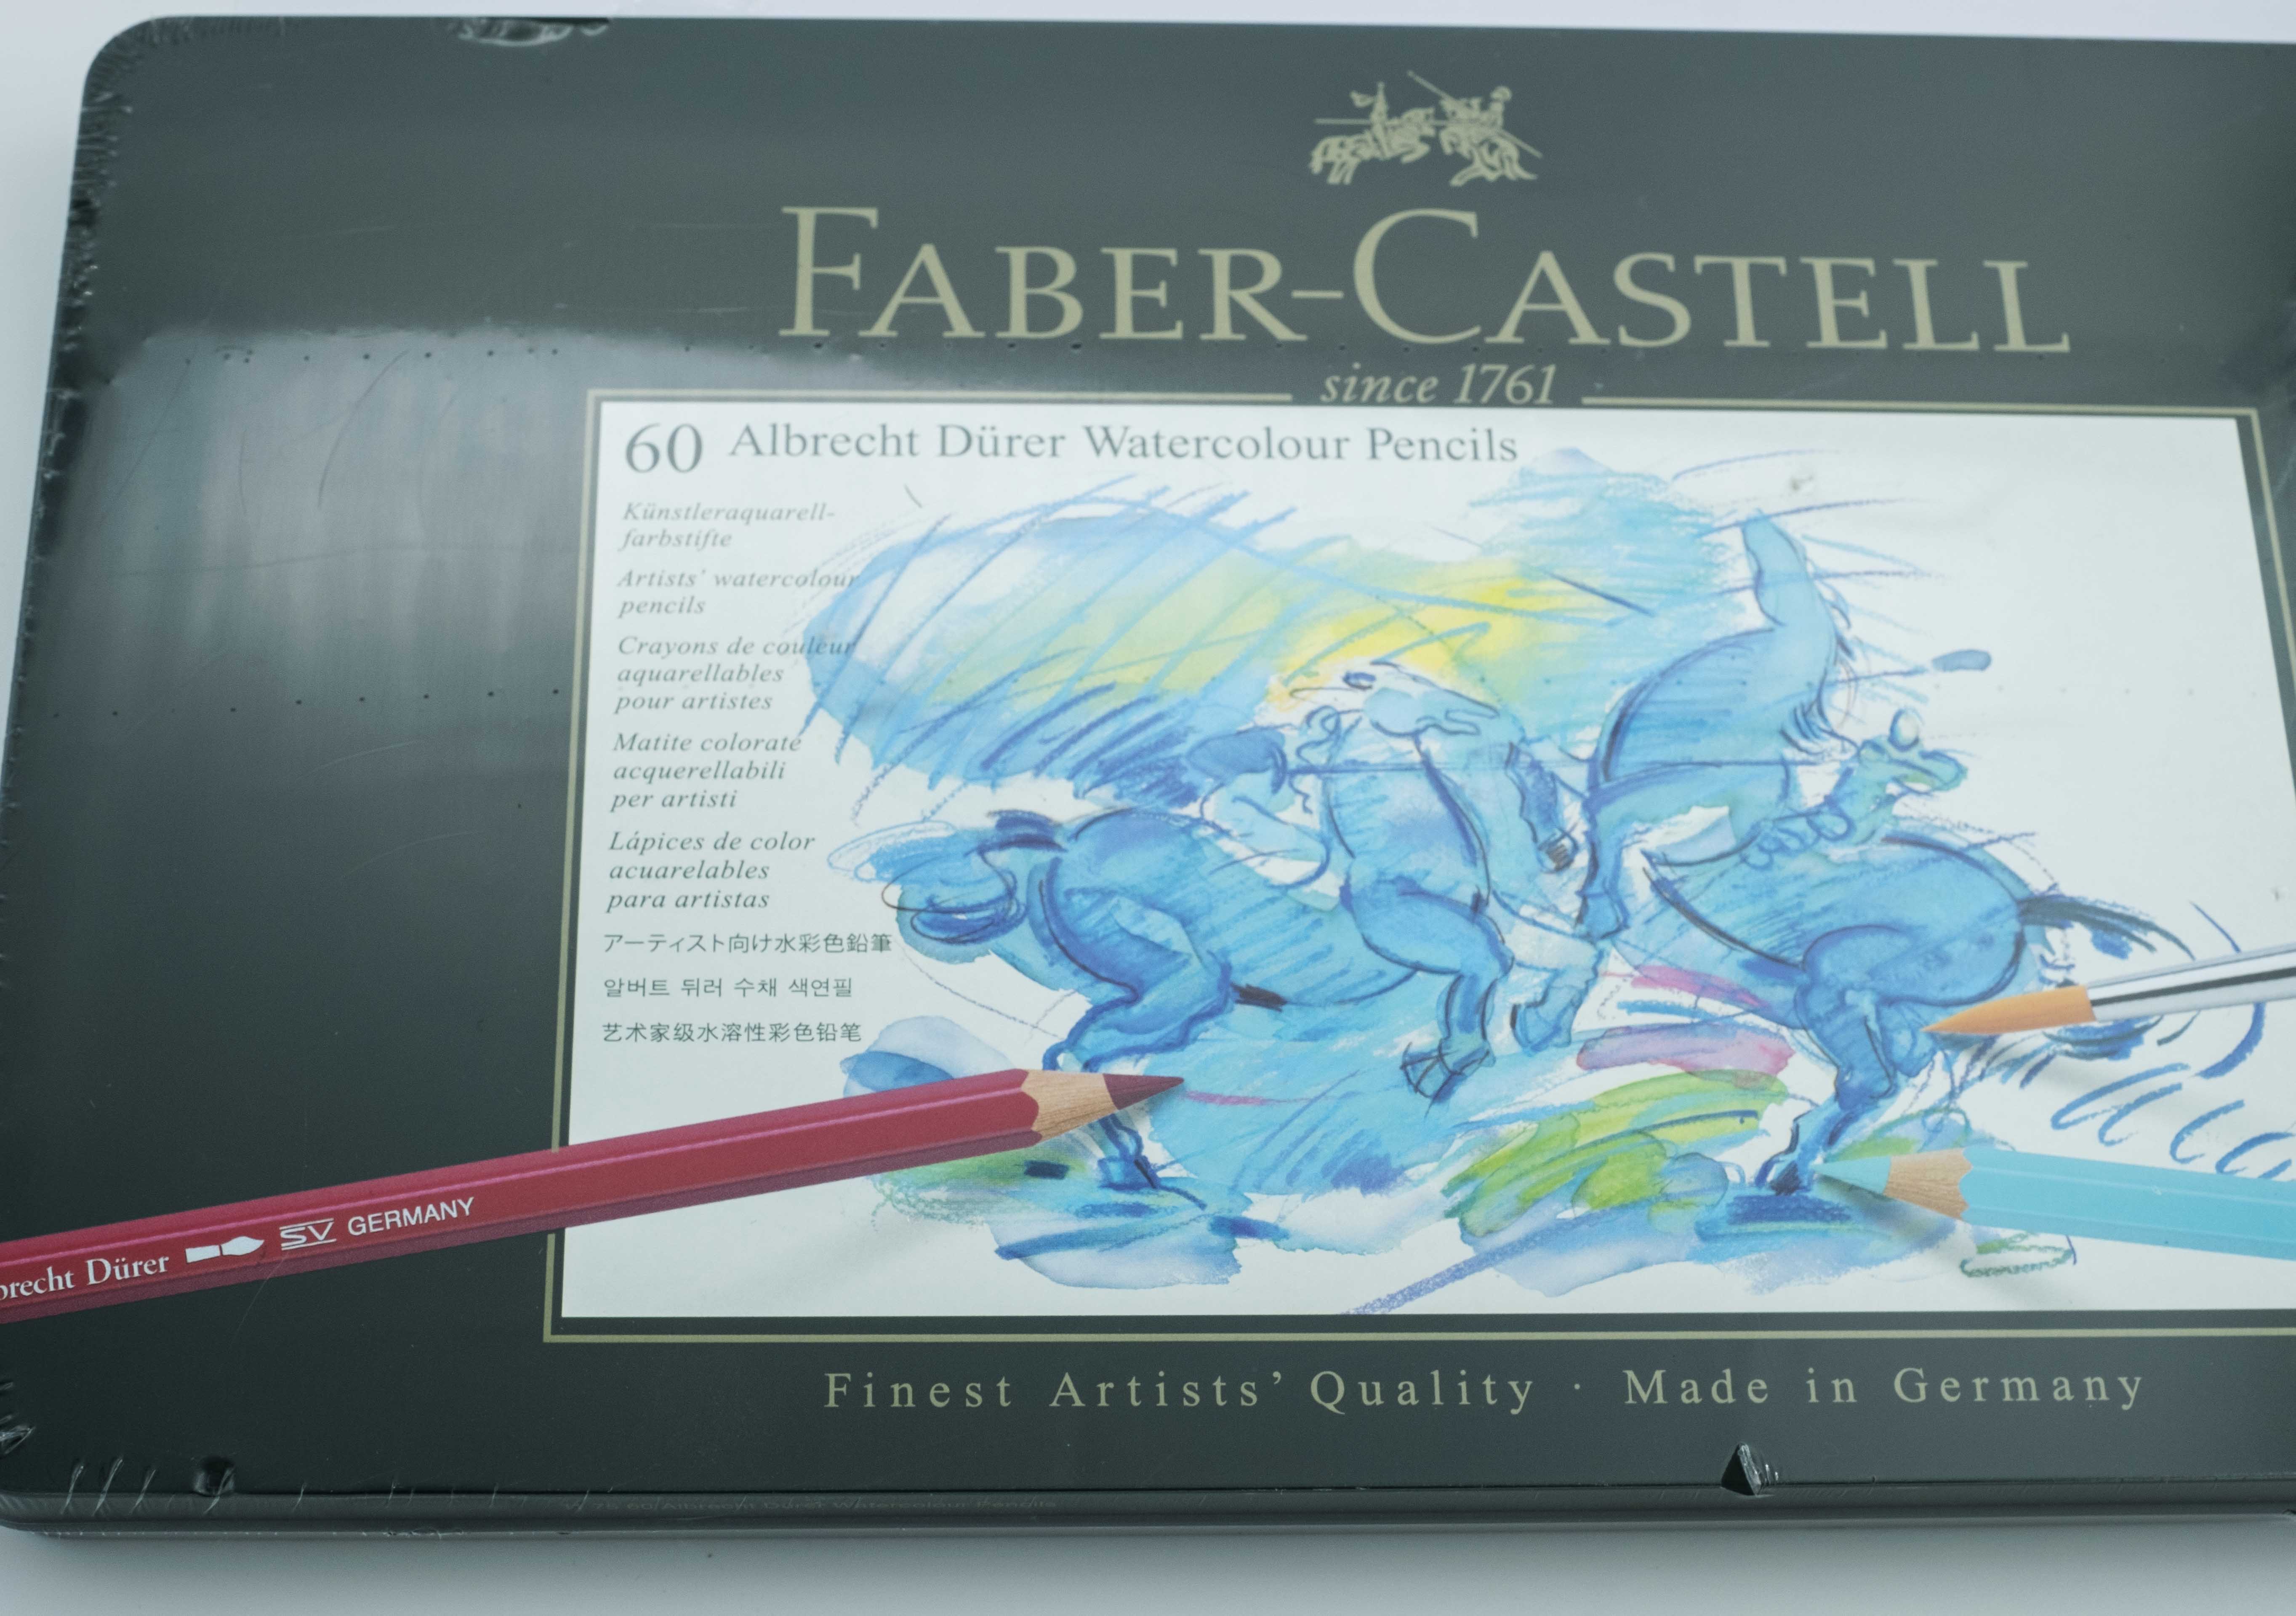 REVIEW: Faber-Castell Albrecht Dürer Watercolor Pencils! 